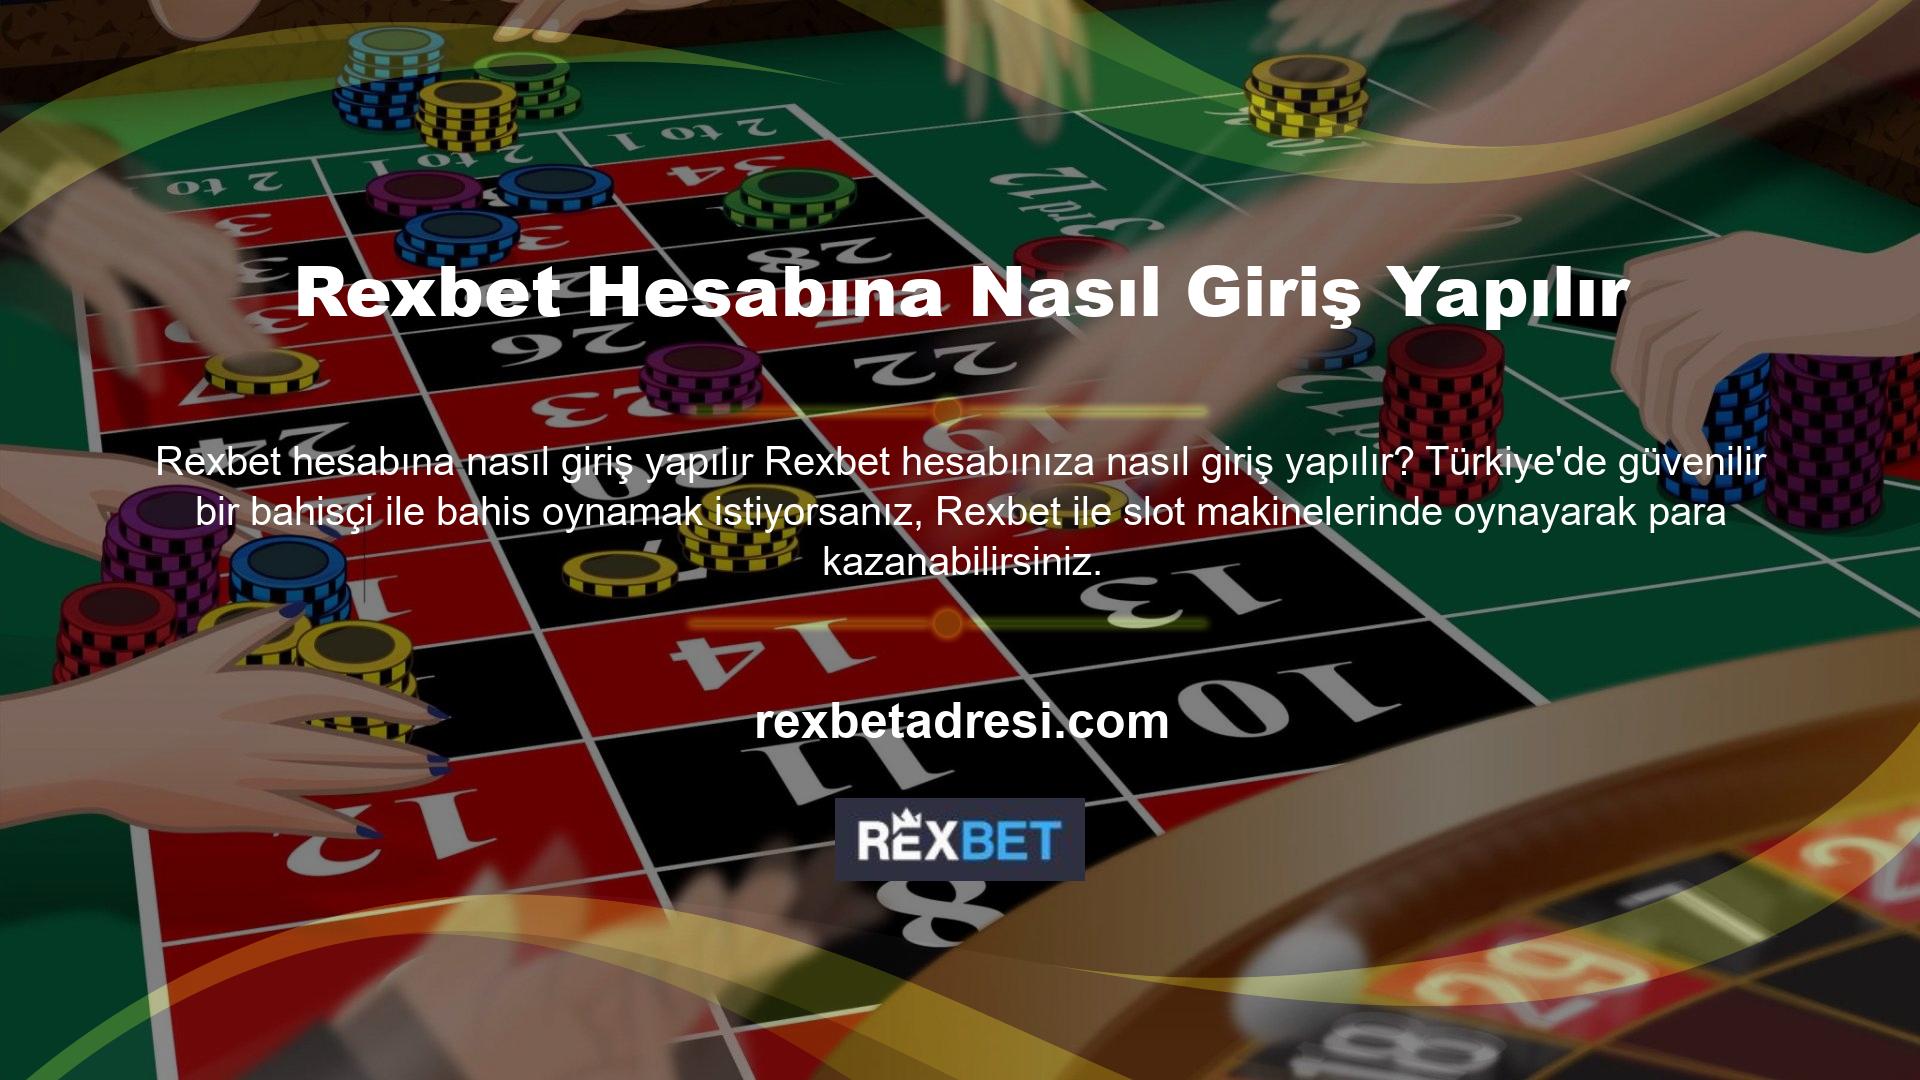 Velakin Rexbet, çok çeşitli çevrimiçi casino oyunlarına erişimi olan bir bahisçidir